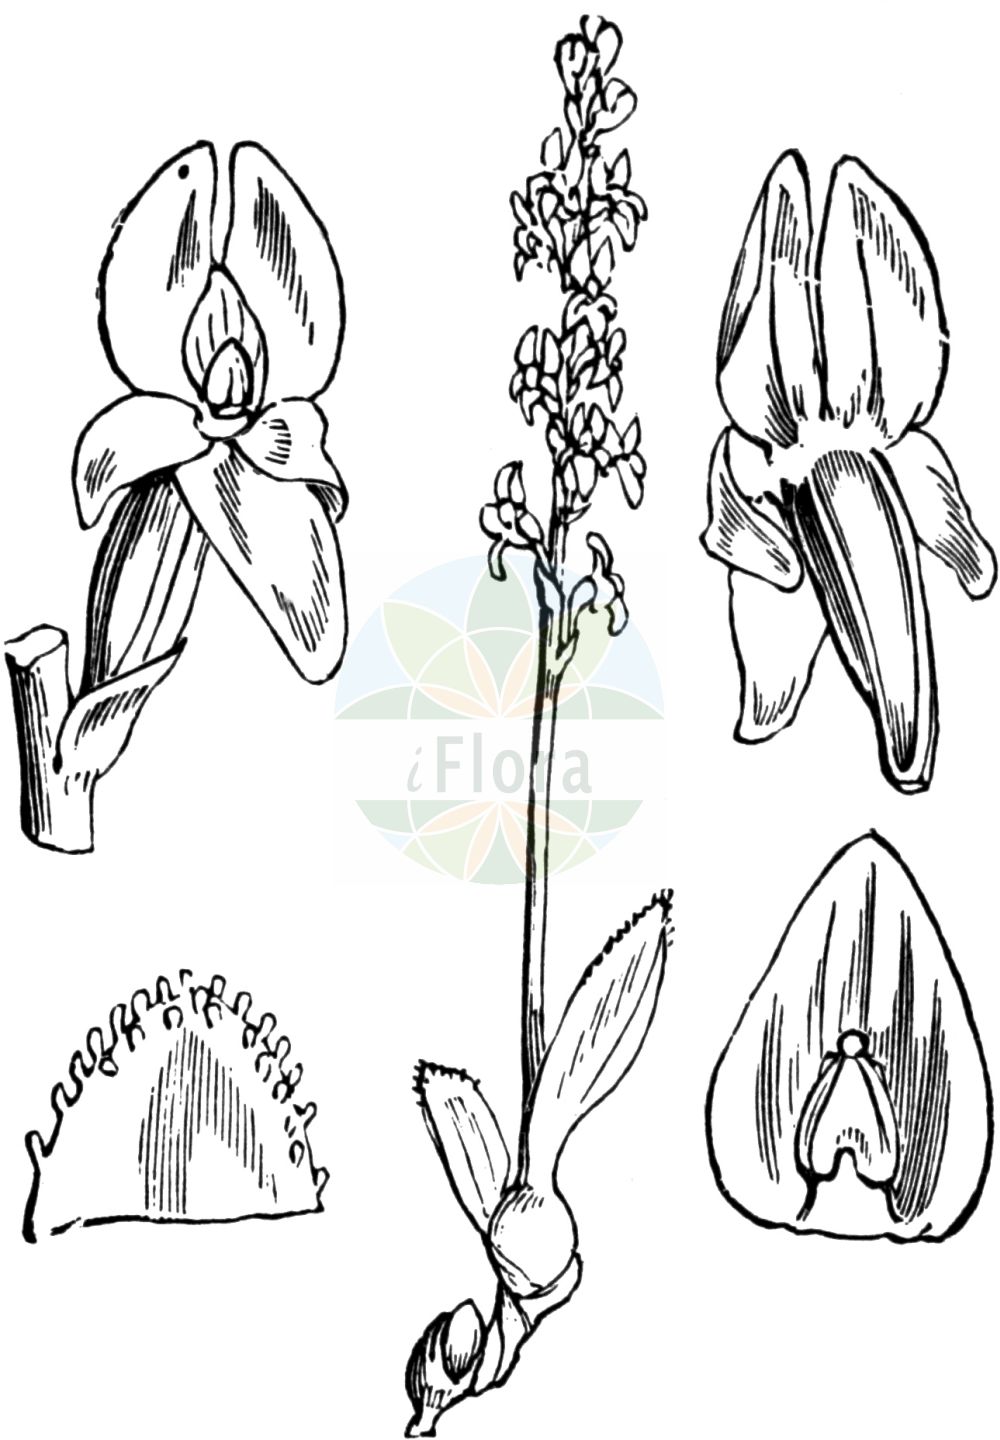 Historische Abbildung von Hammarbya paludosa (Sumpf-Weichwurz - Bog Orchid). Das Bild zeigt Blatt, Bluete, Frucht und Same. ---- Historical Drawing of Hammarbya paludosa (Sumpf-Weichwurz - Bog Orchid). The image is showing leaf, flower, fruit and seed.(Hammarbya paludosa,Sumpf-Weichwurz,Bog Orchid,Epipactis paludosa,Hammarbya paludosa,Malaxis paludosa,Malaxis palustris,Ophrys paludosa,Ophrys palustris,Orchis paludosa,Sturmia paludosa,Sumpf-Weichwurz,Weichstaendel,Bog Orchid,Bog Adder's-mouth Orchid,Hammarbya,Weichwurz,Bog Orchid,Orchidaceae,Knabenkrautgewächse,Orchid family,Blatt,Bluete,Frucht,Same,leaf,flower,fruit,seed,Fitch et al. (1880))